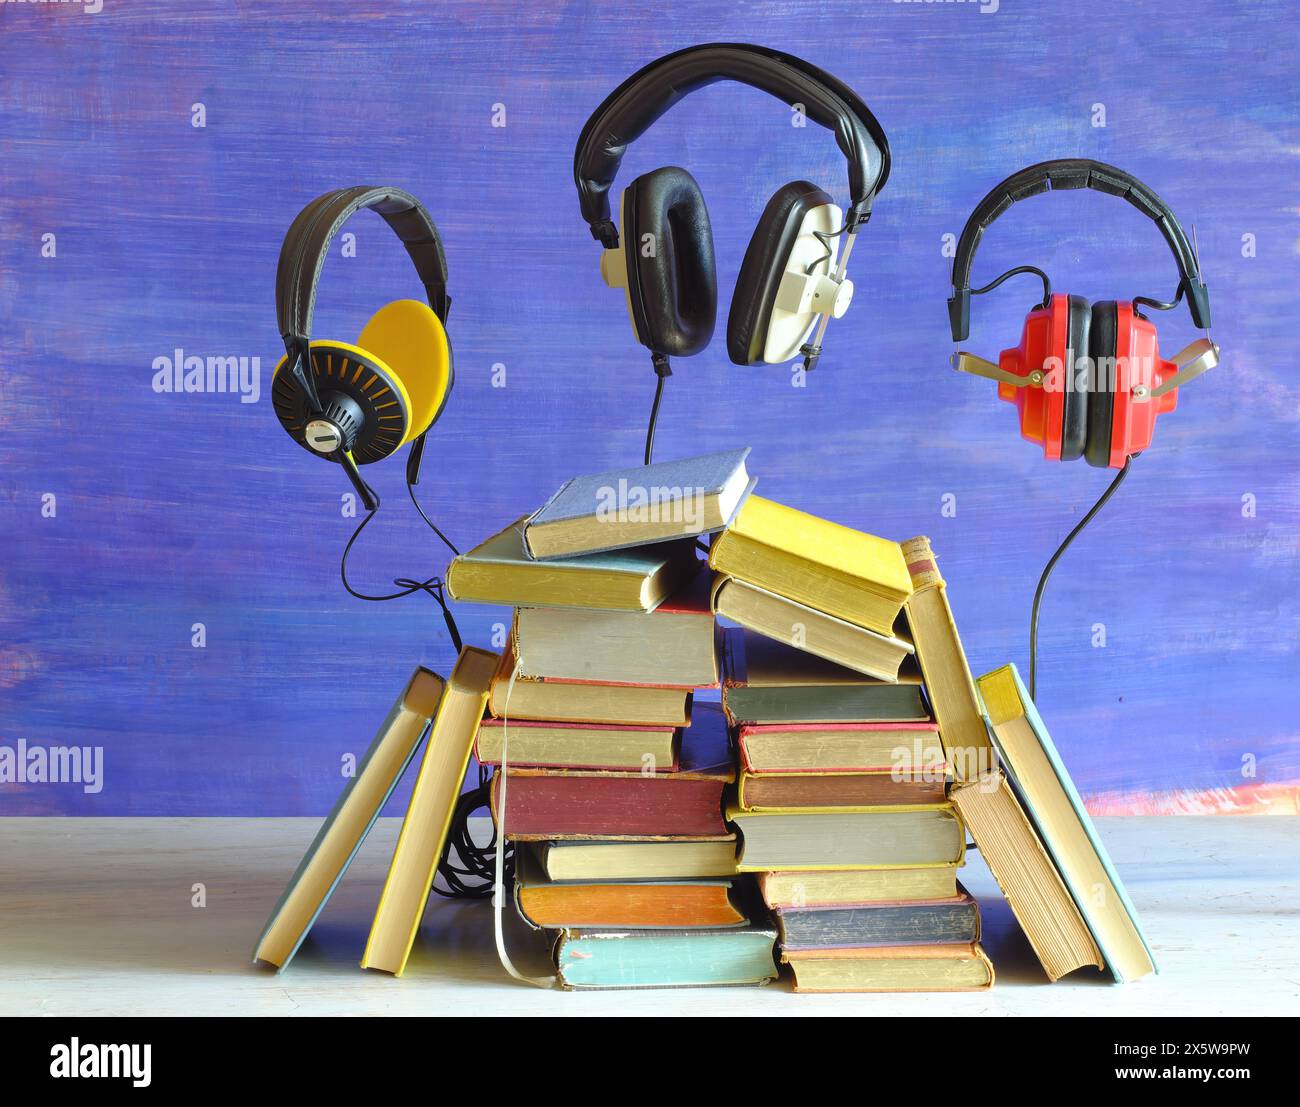 Hörbuch-Konzept mit Büchern und 3 schwimmenden Vintage-Kopfhörern, Literatur, Bildung, Unterhaltung, kostenloser Kopierraum Stockfoto